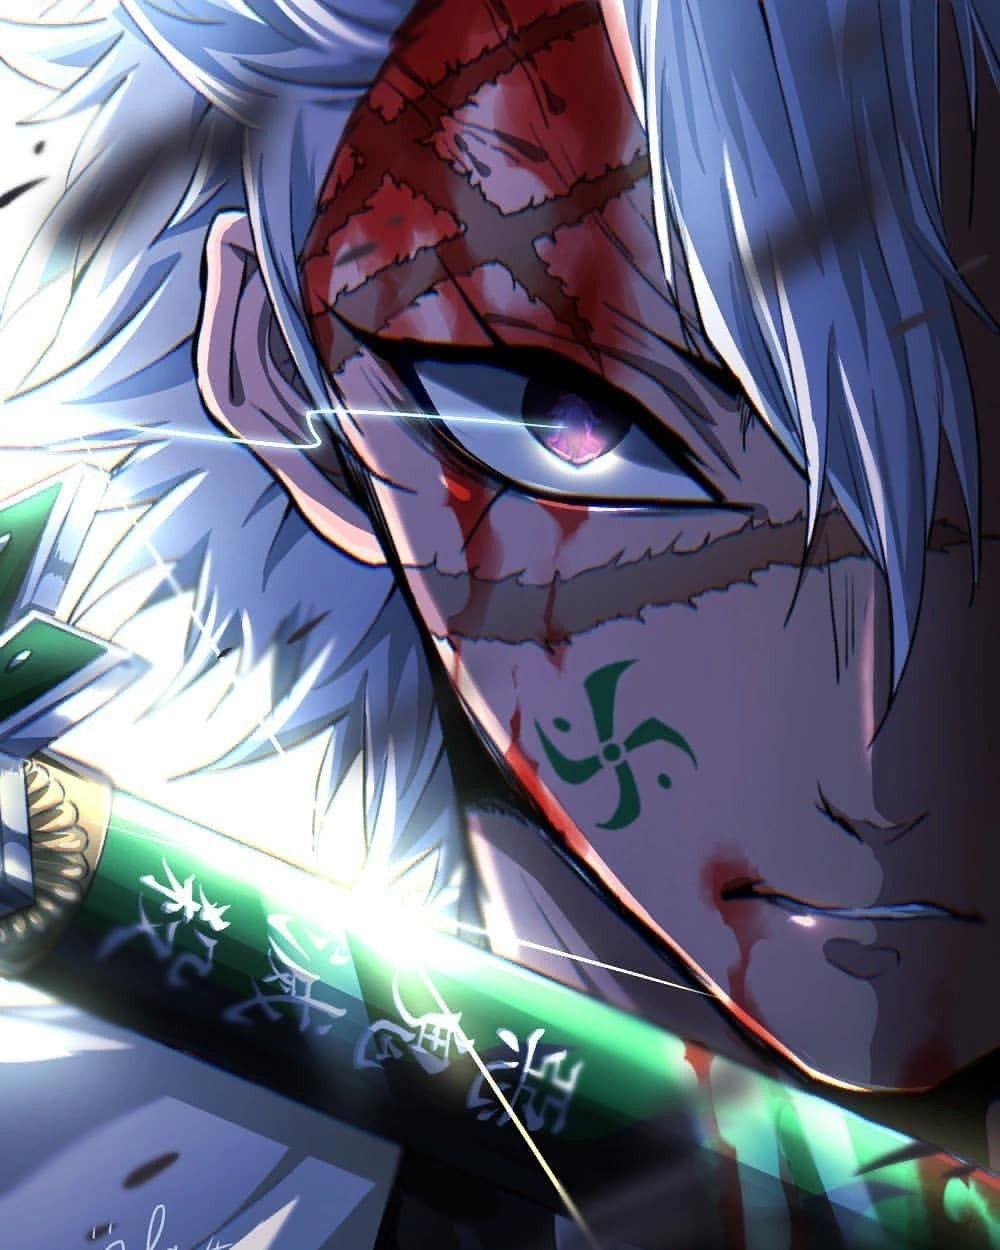 Demon Slayer Wallpaper Sanemi - Anime Wallpaper HD